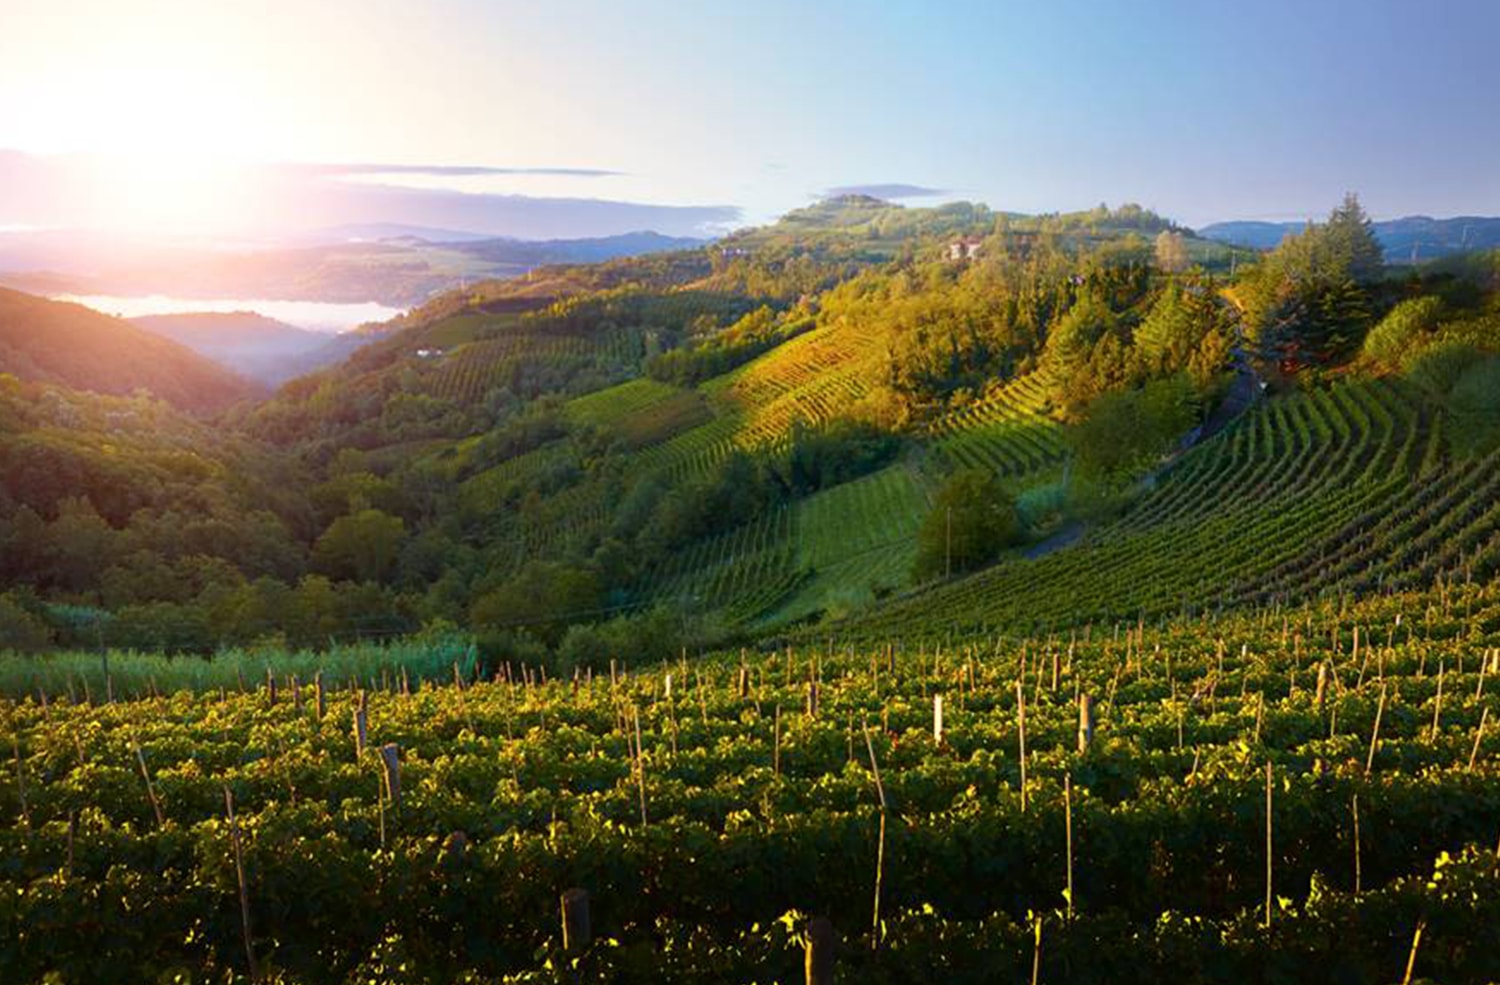 Landscape over vineyards